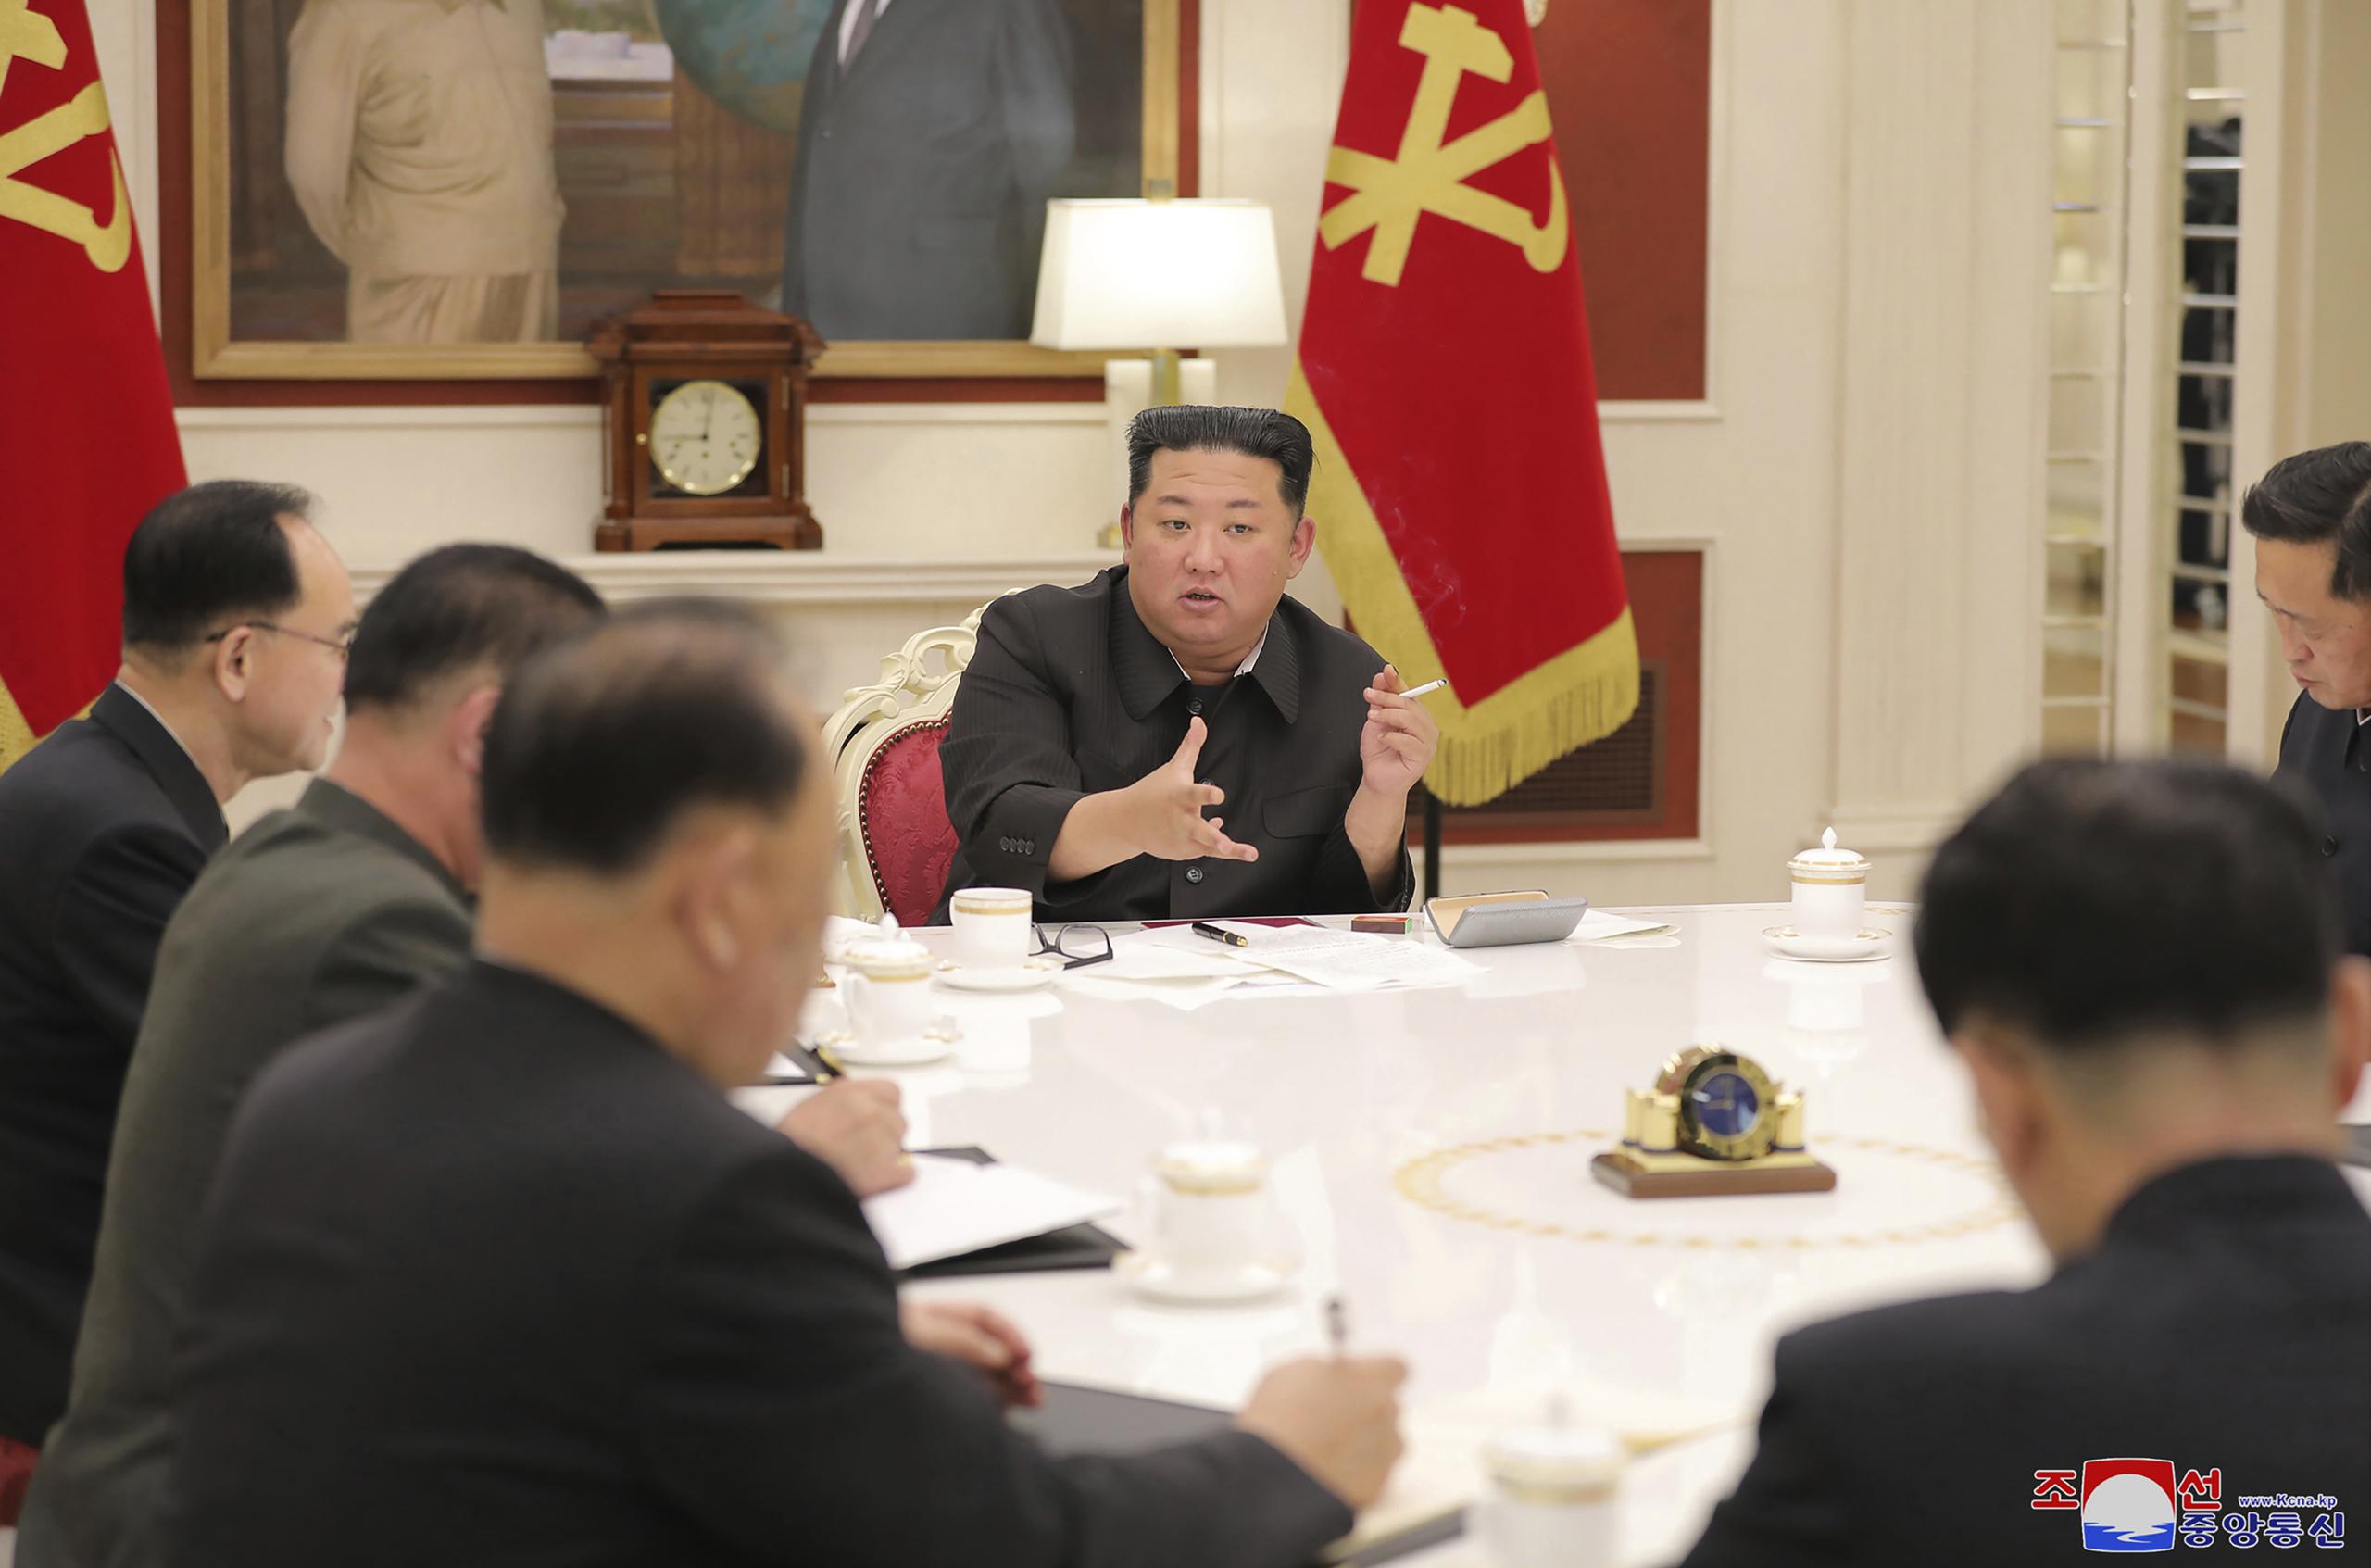 Kim ofreció el miércoles la reserva de medicamentos de su familia para los afectados por “una epidemia intestinal aguda” en la localidad suroccidental de Haeju, según la Agencia Central de Noticias de Corea.